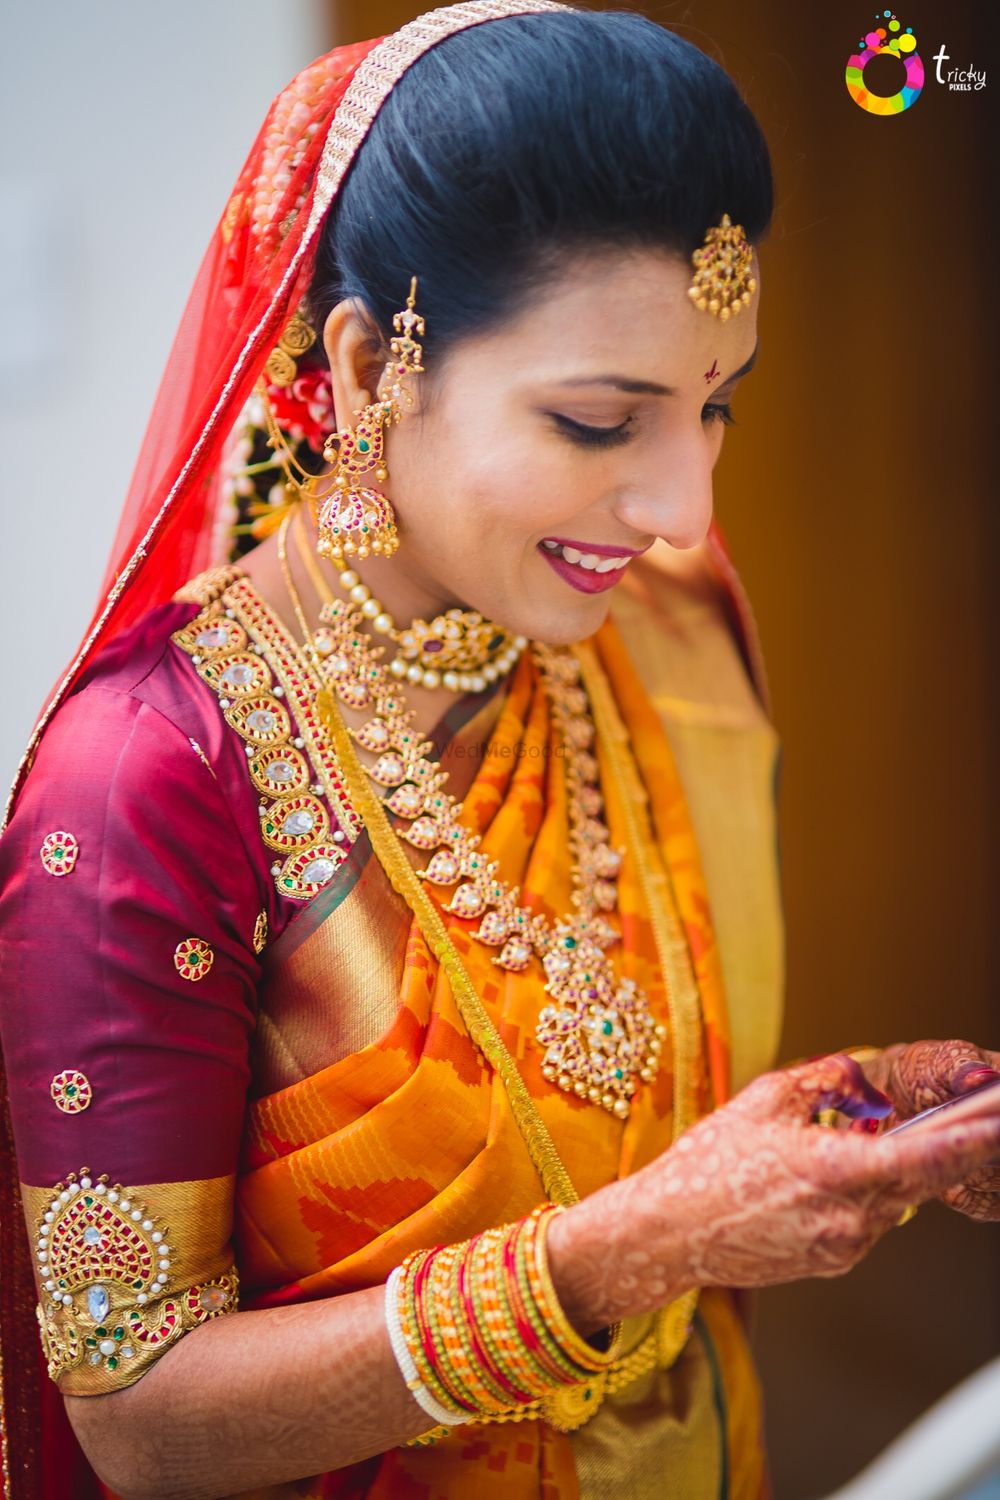 Photo of South Indian bride wearing orange kanjivaram with embellished maroon blouse